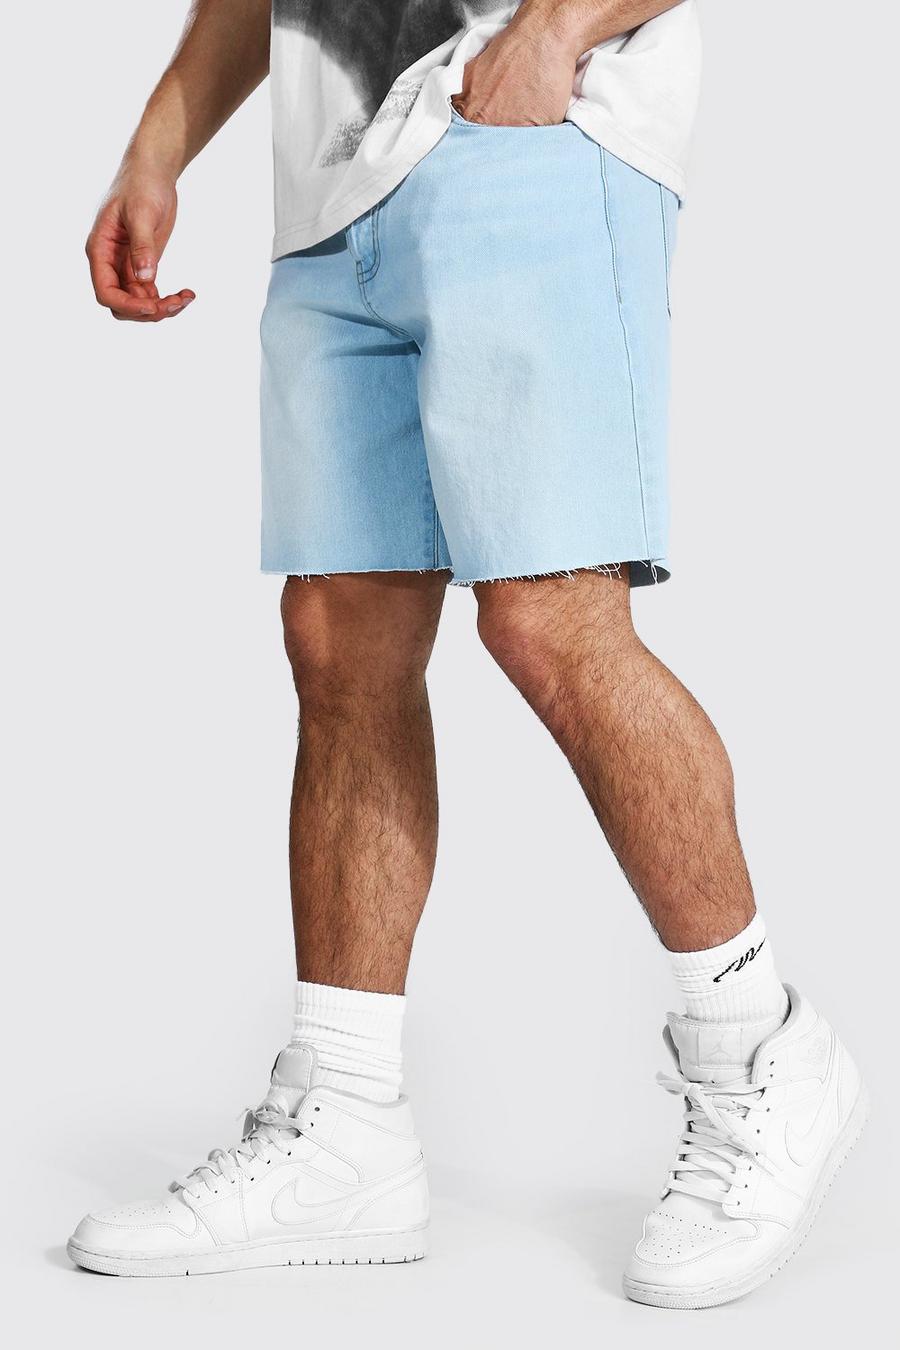 Pantalones cortos vaqueros holgados con bajo sin rematar, Azul claro image number 1